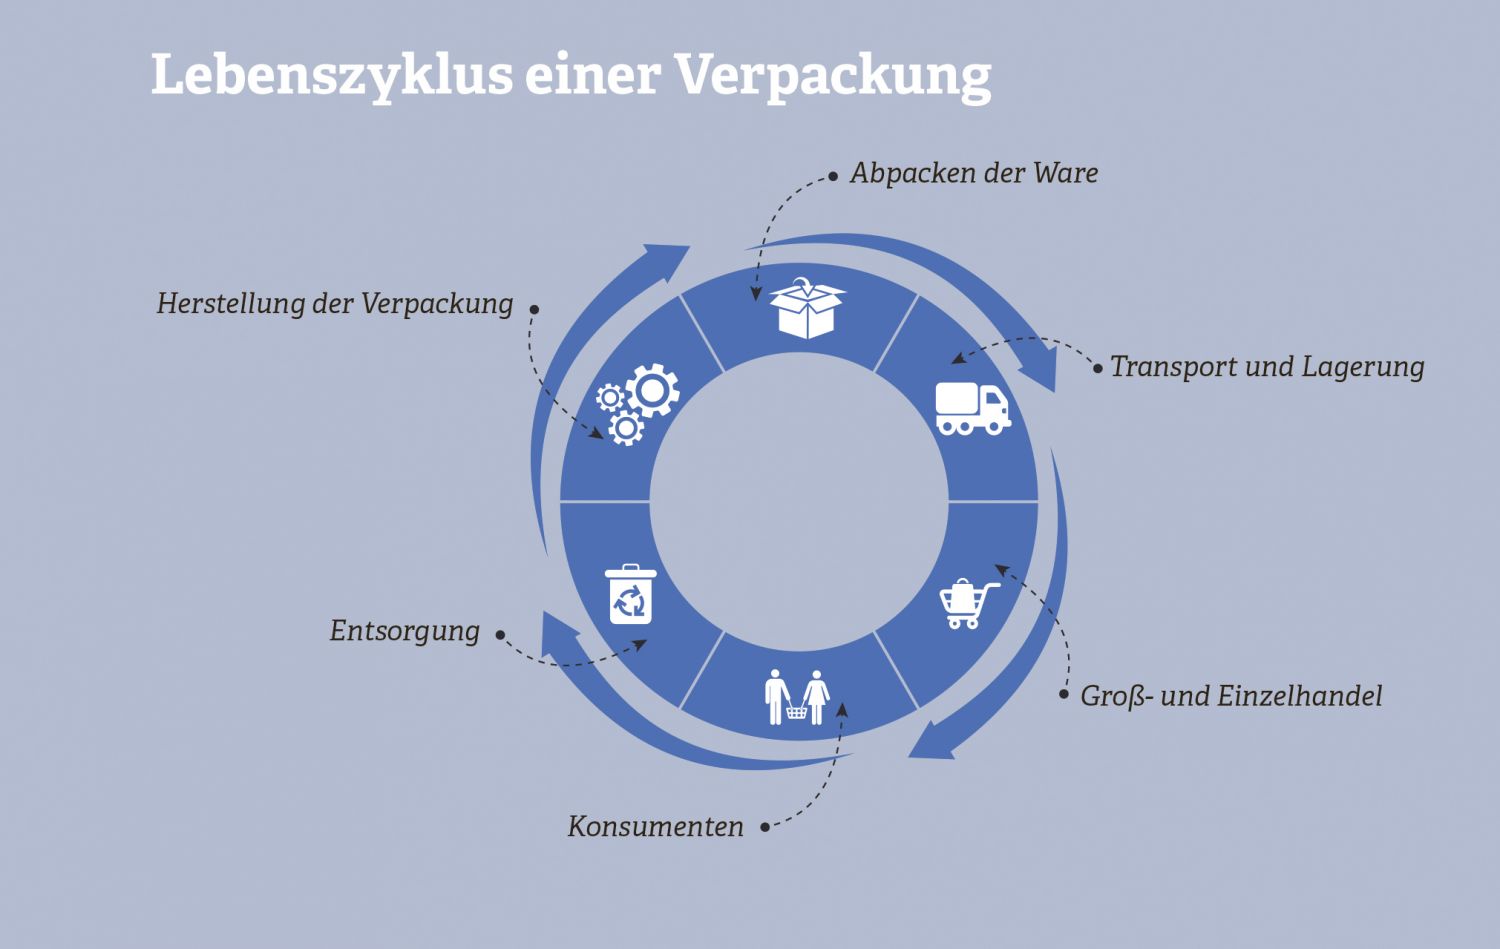 Grafik zum Lebenszyklus einer Verpackung. Quelle: Deutsches Verpackungsinstitut e.V., 2016